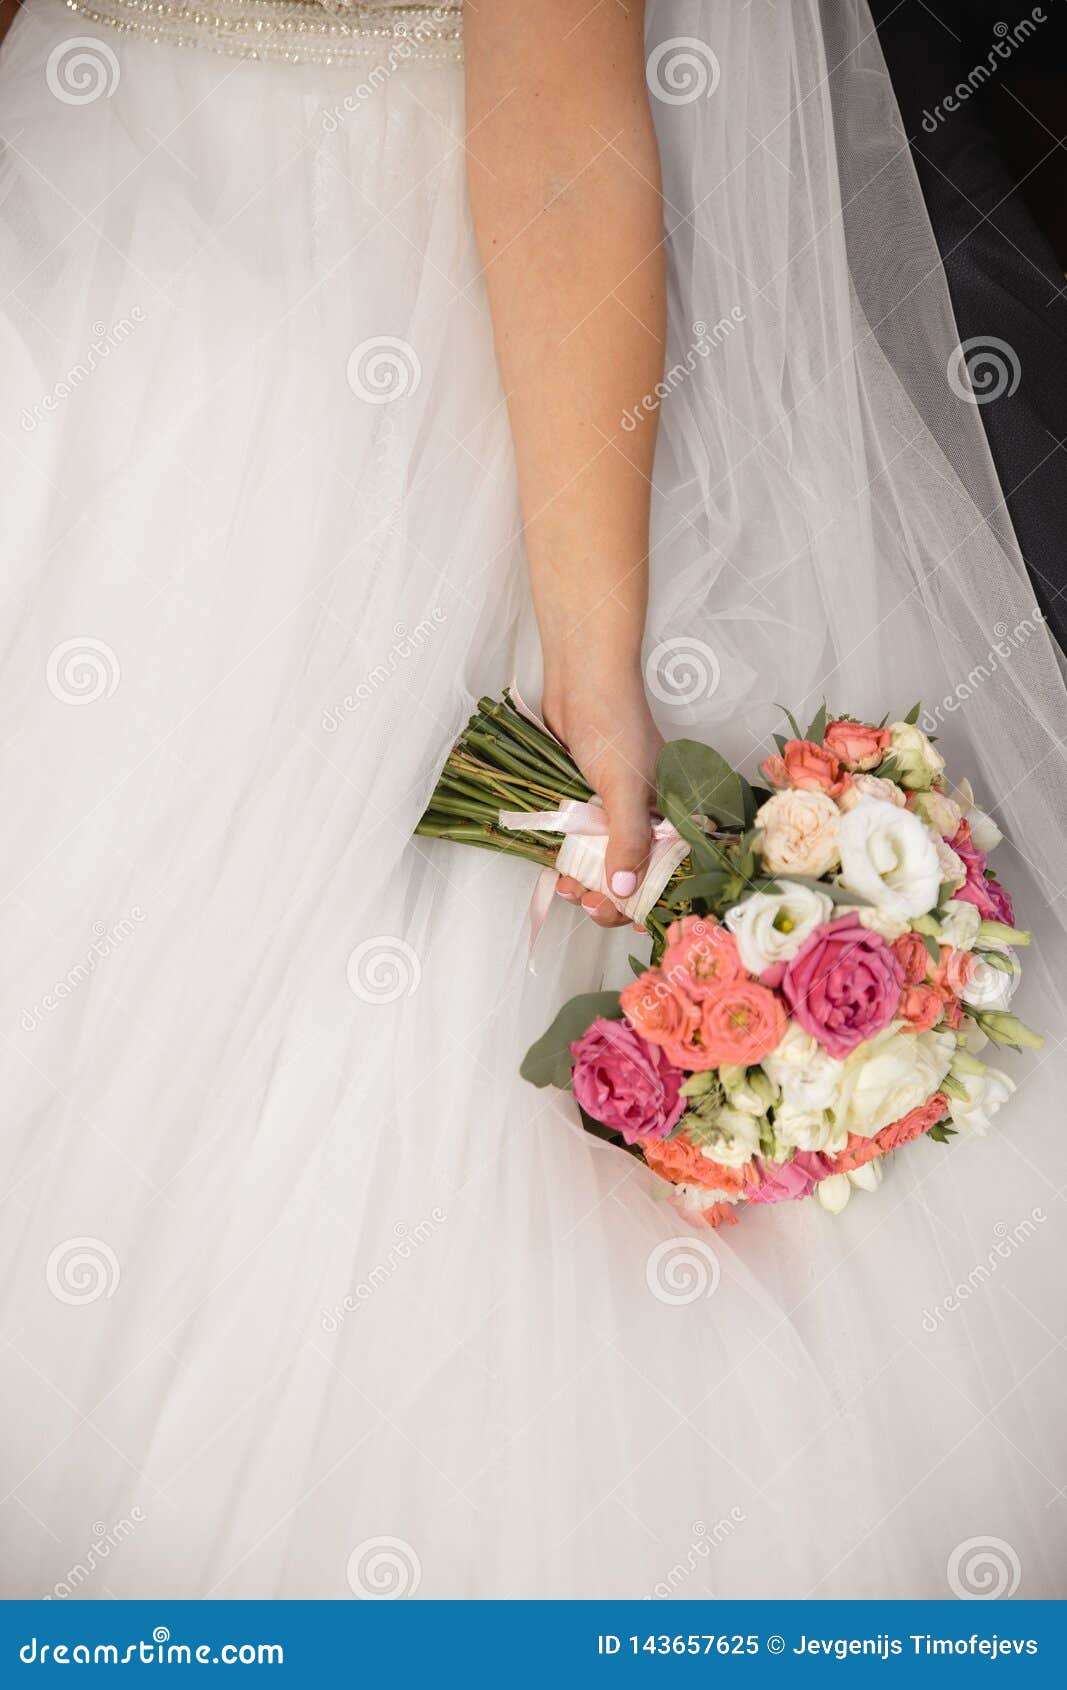 Wedding Flowers Bouquet in Bride`s Hand - Bride in Wedding Dress Stock ...